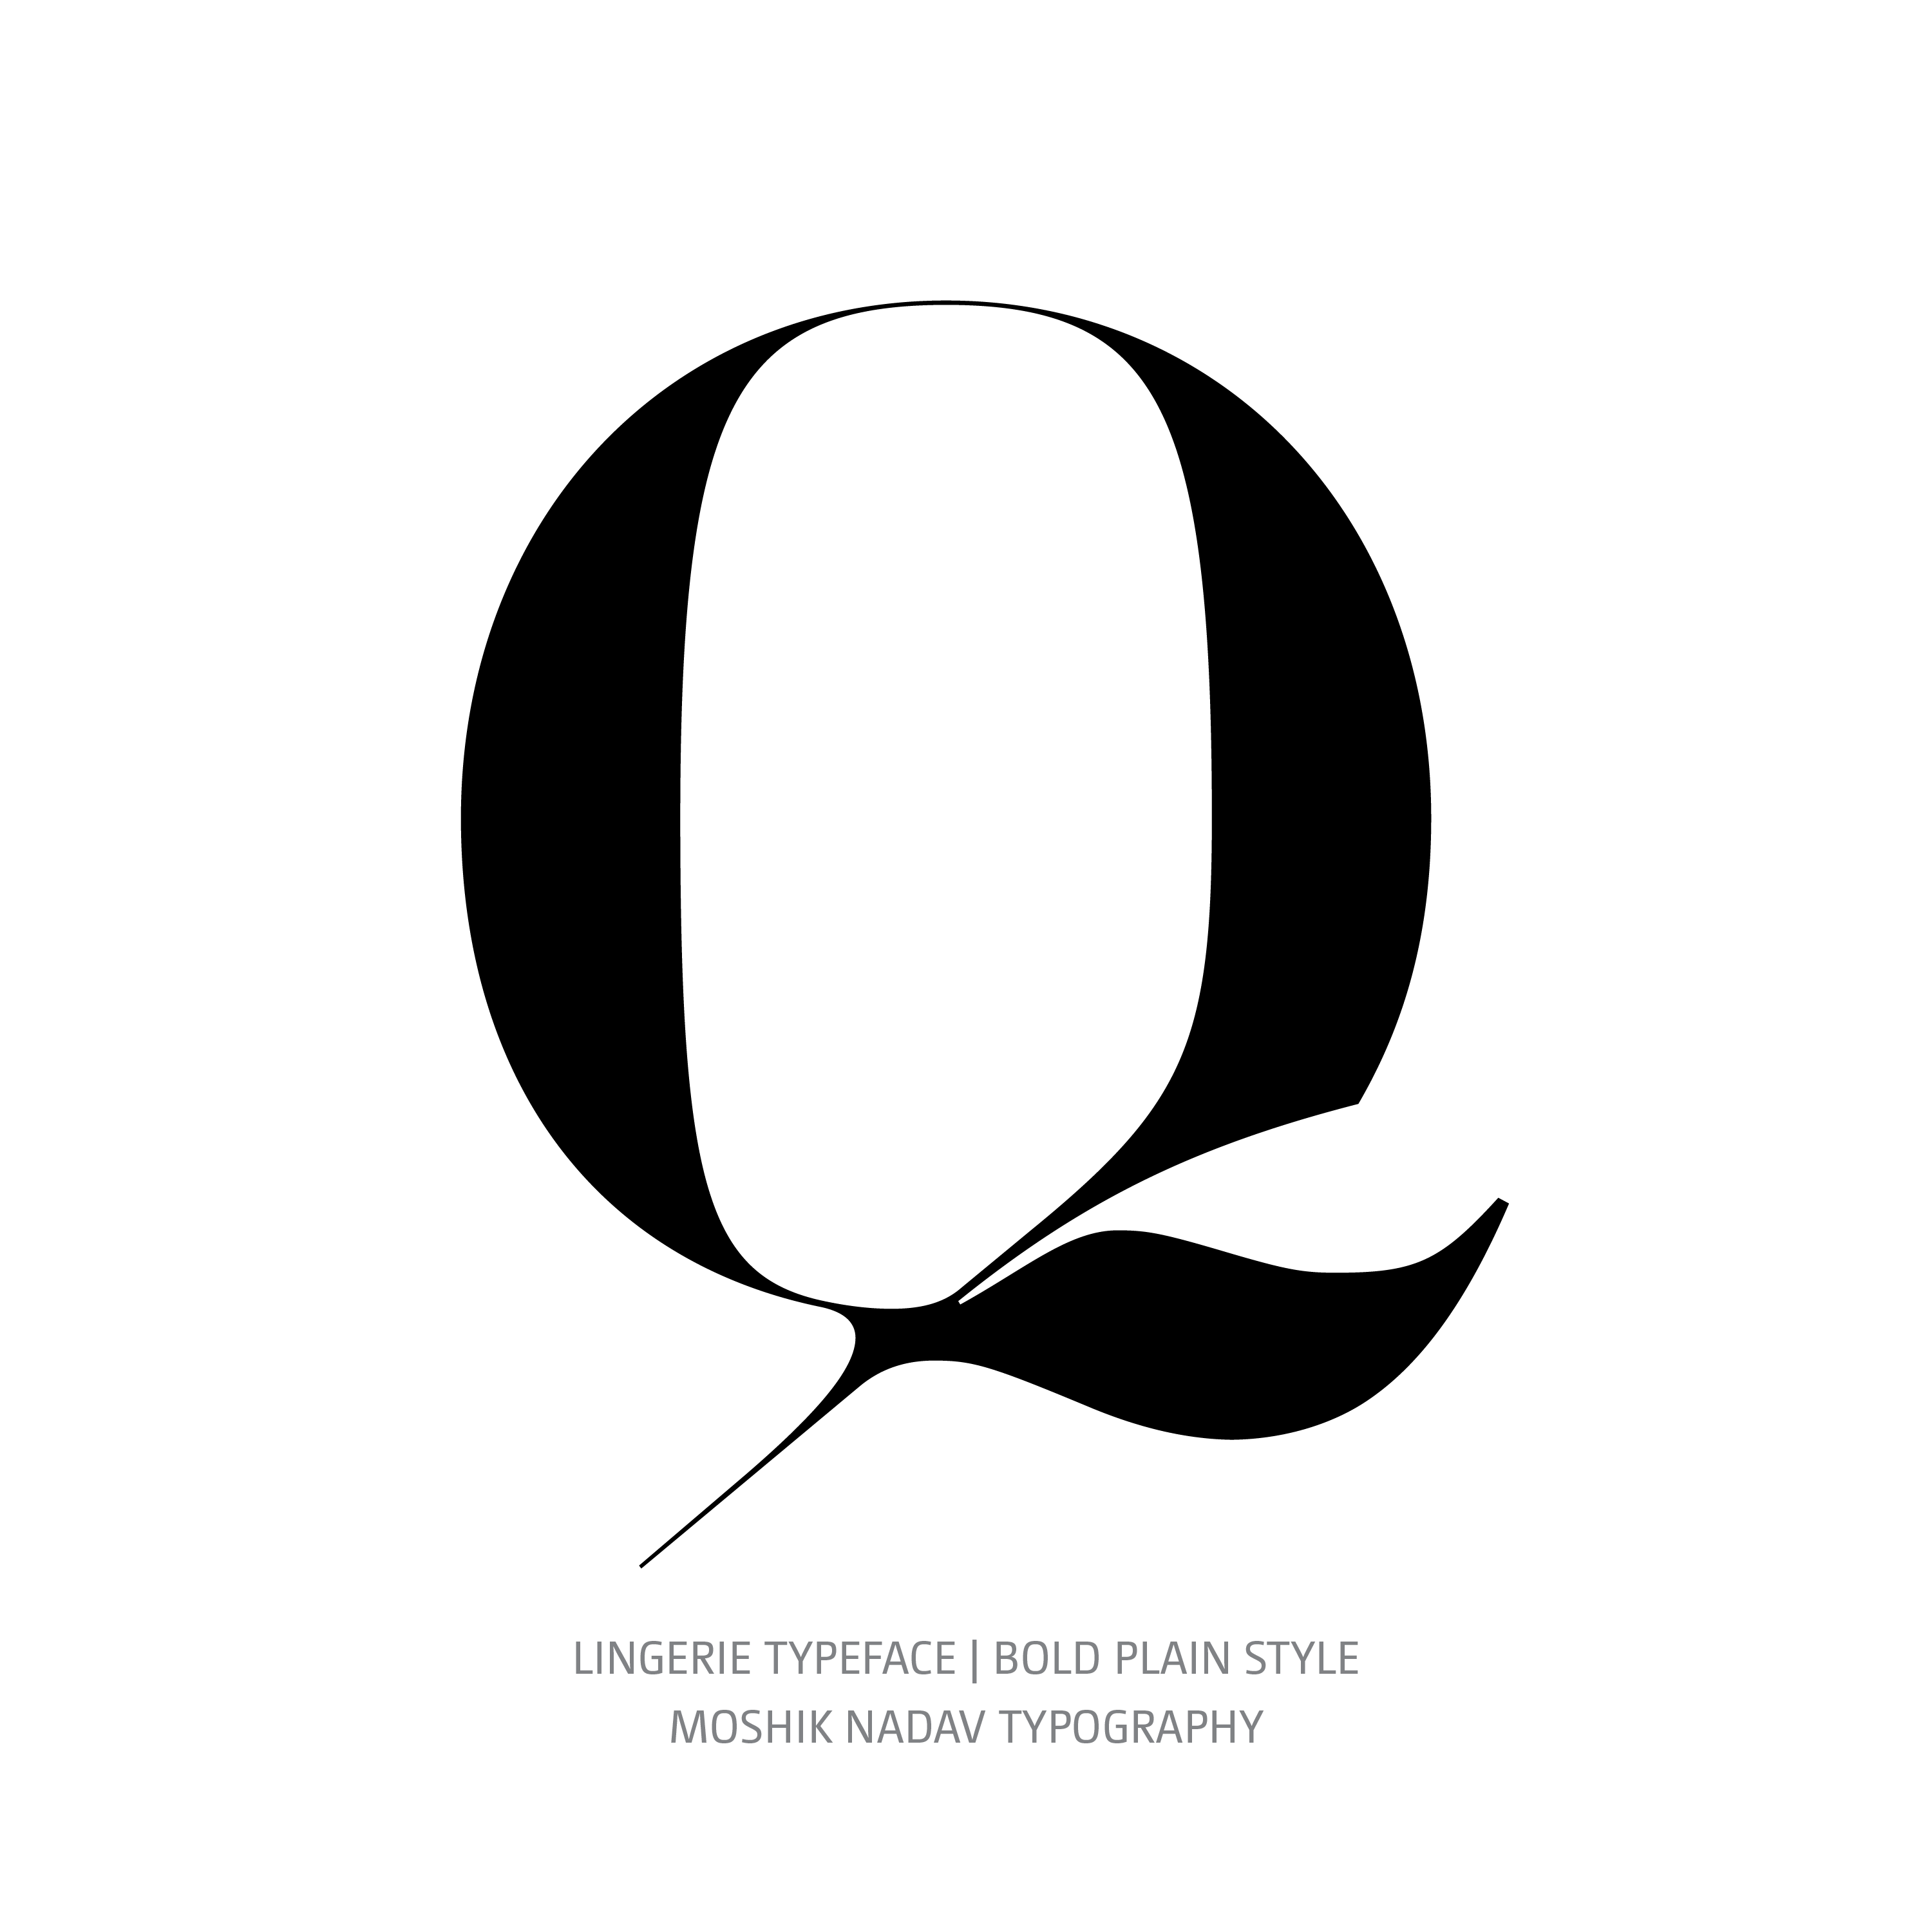 Lingerie Typeface Bold Plain Q